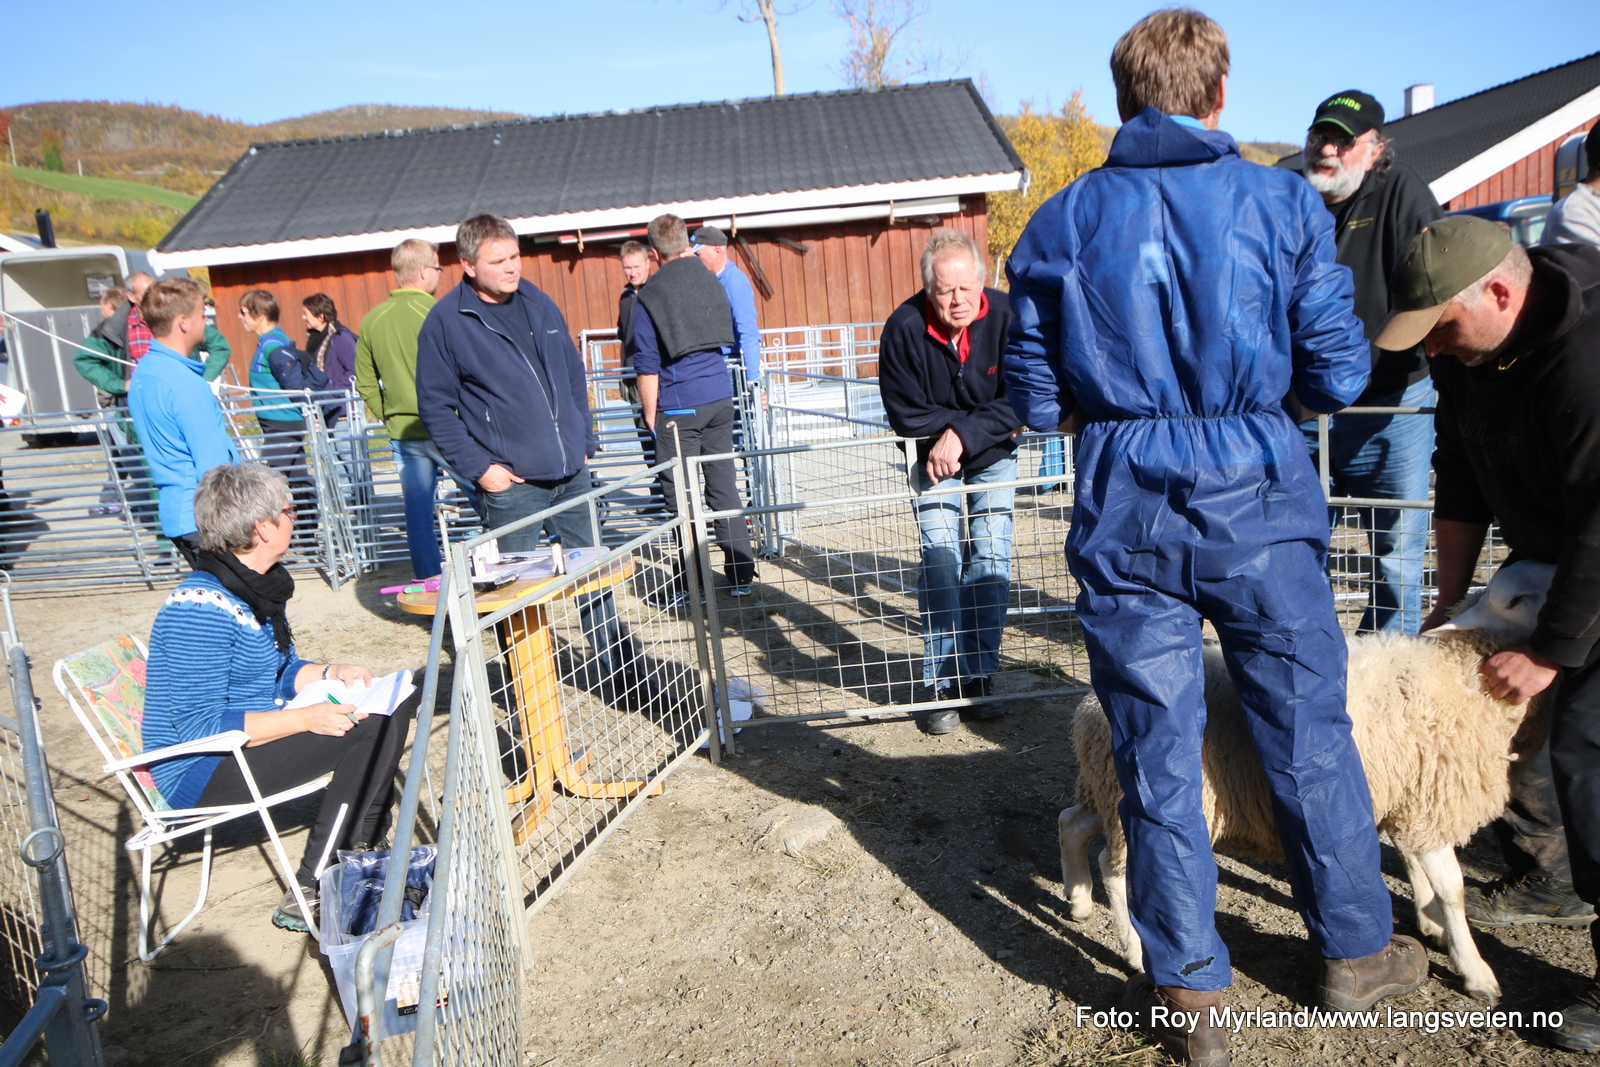 19 sauedag værkåring grønolen valdres landbruk værlam bordercollie Beitostølen Foto:Roy Myrland